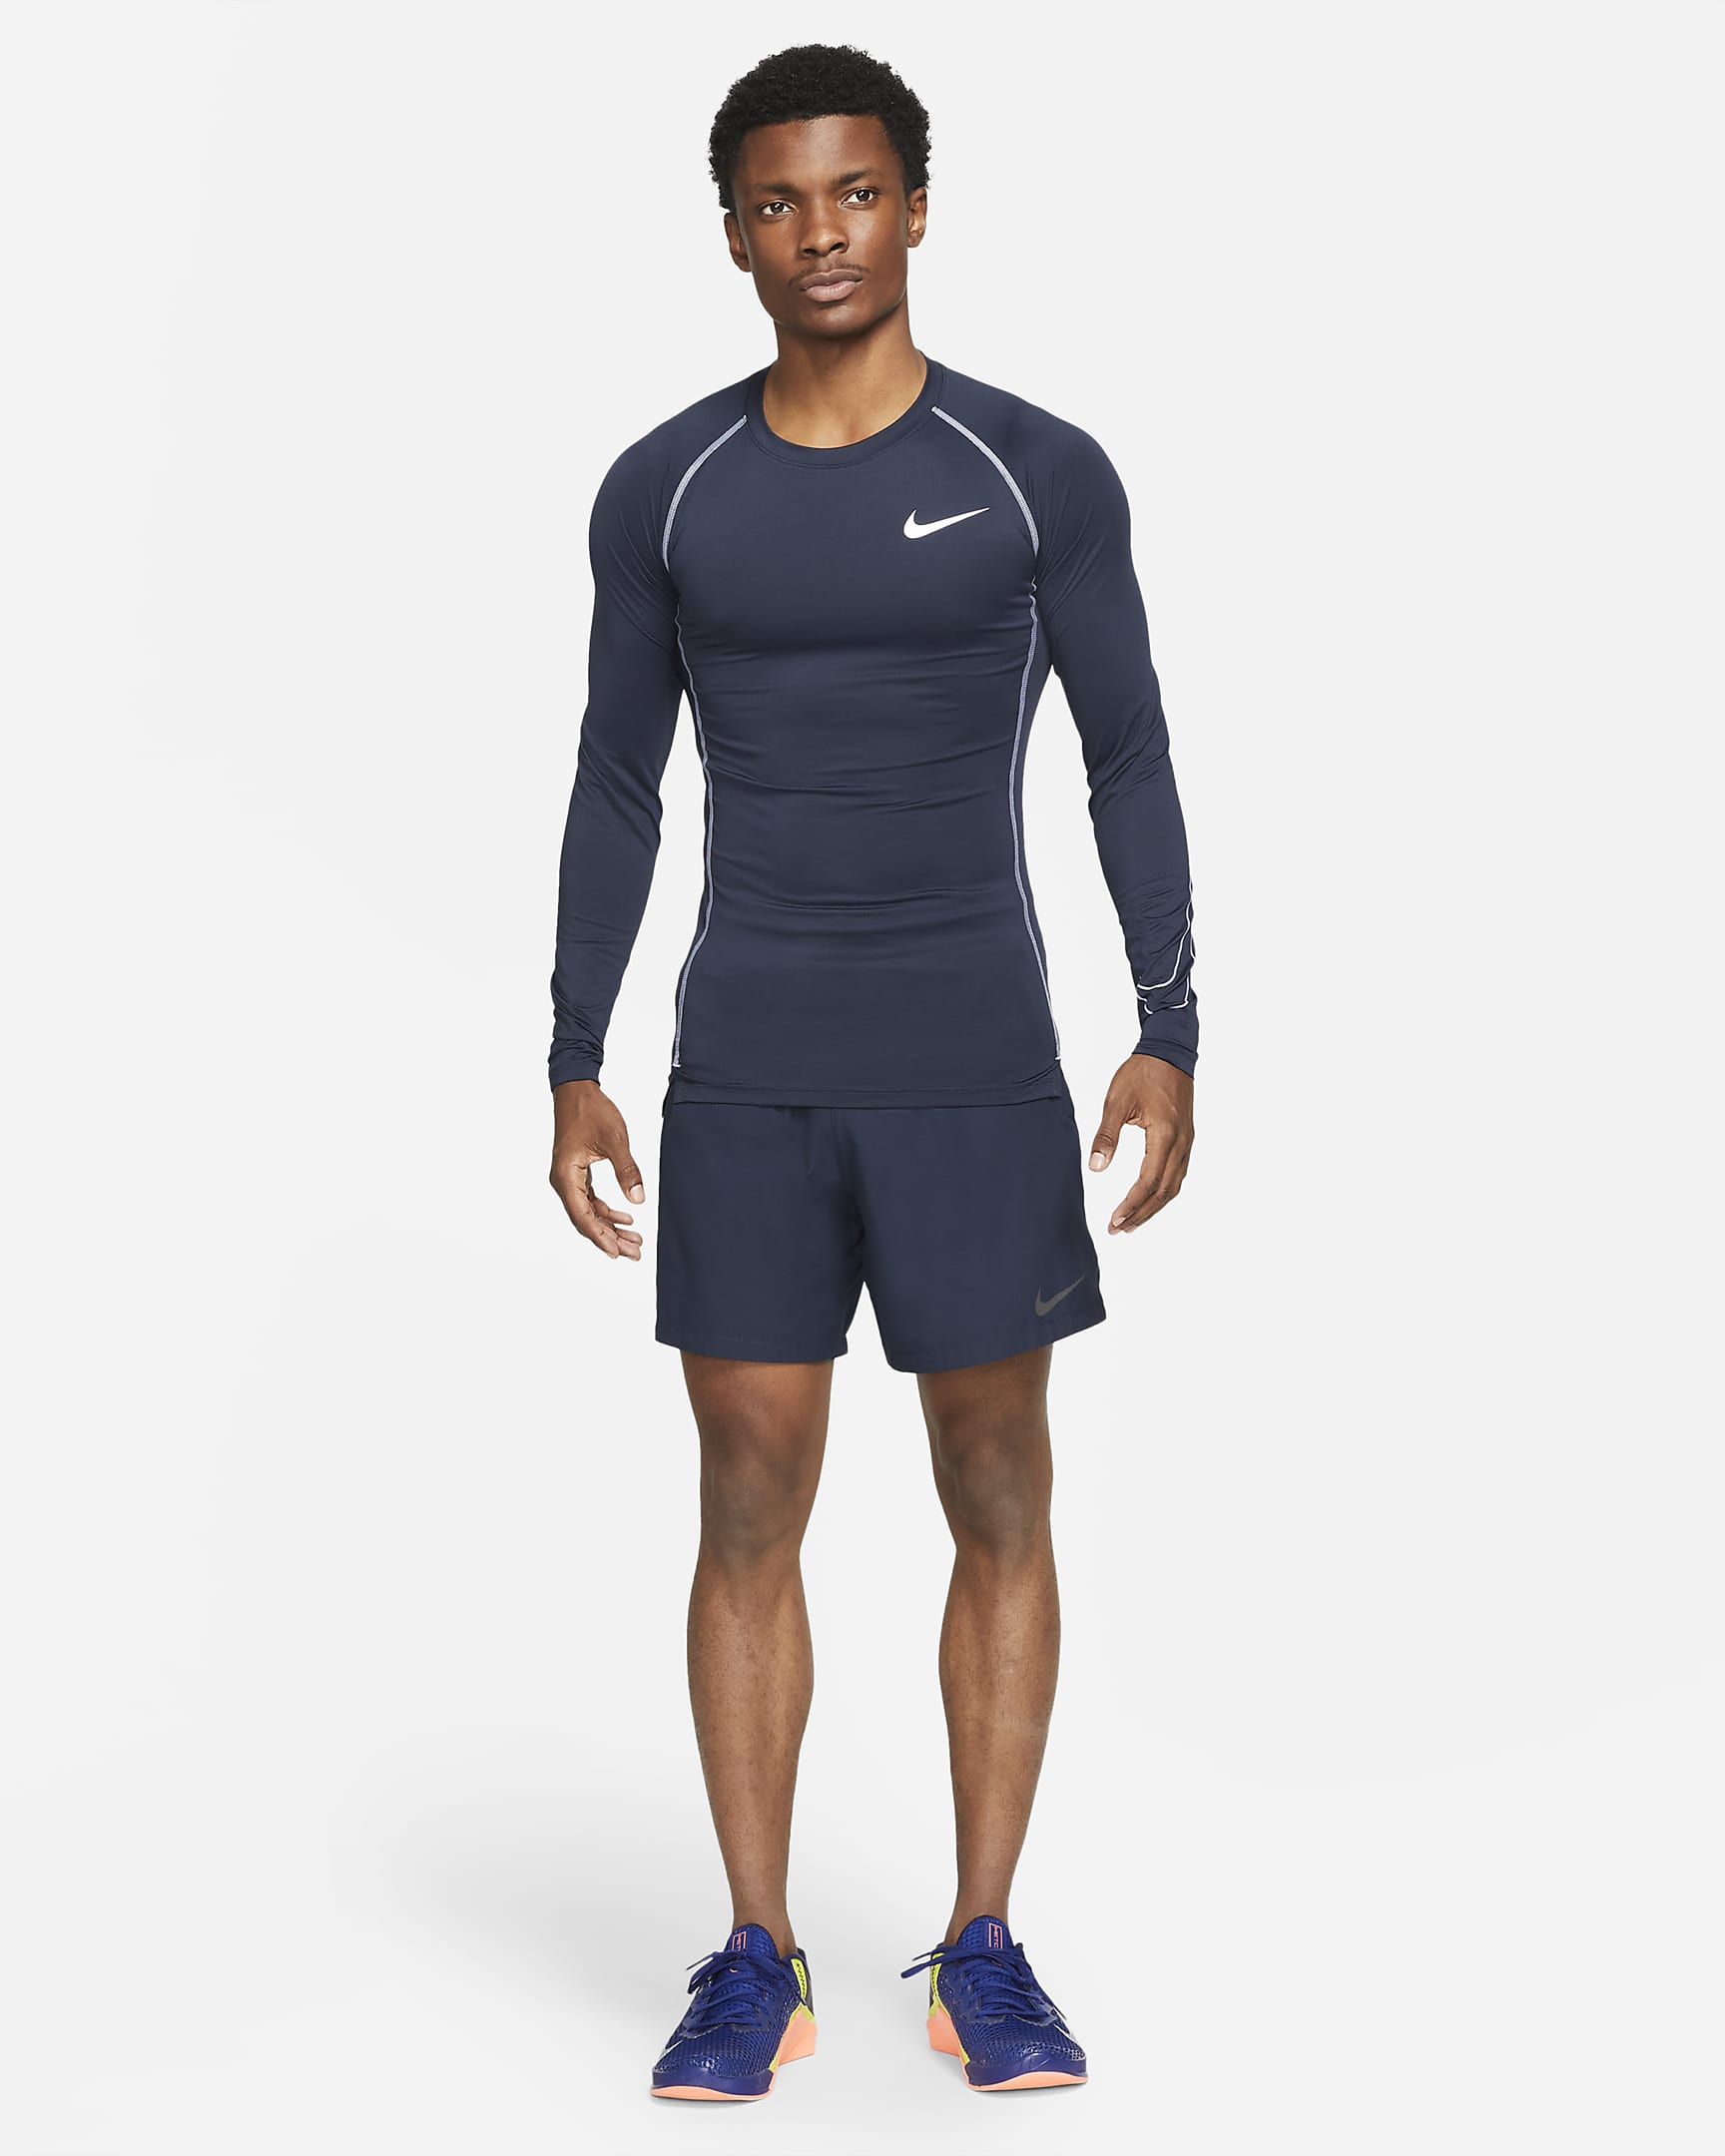 Nike Pro Dri-FIT Men's Tight Fit Long-Sleeve Top. Nike.com